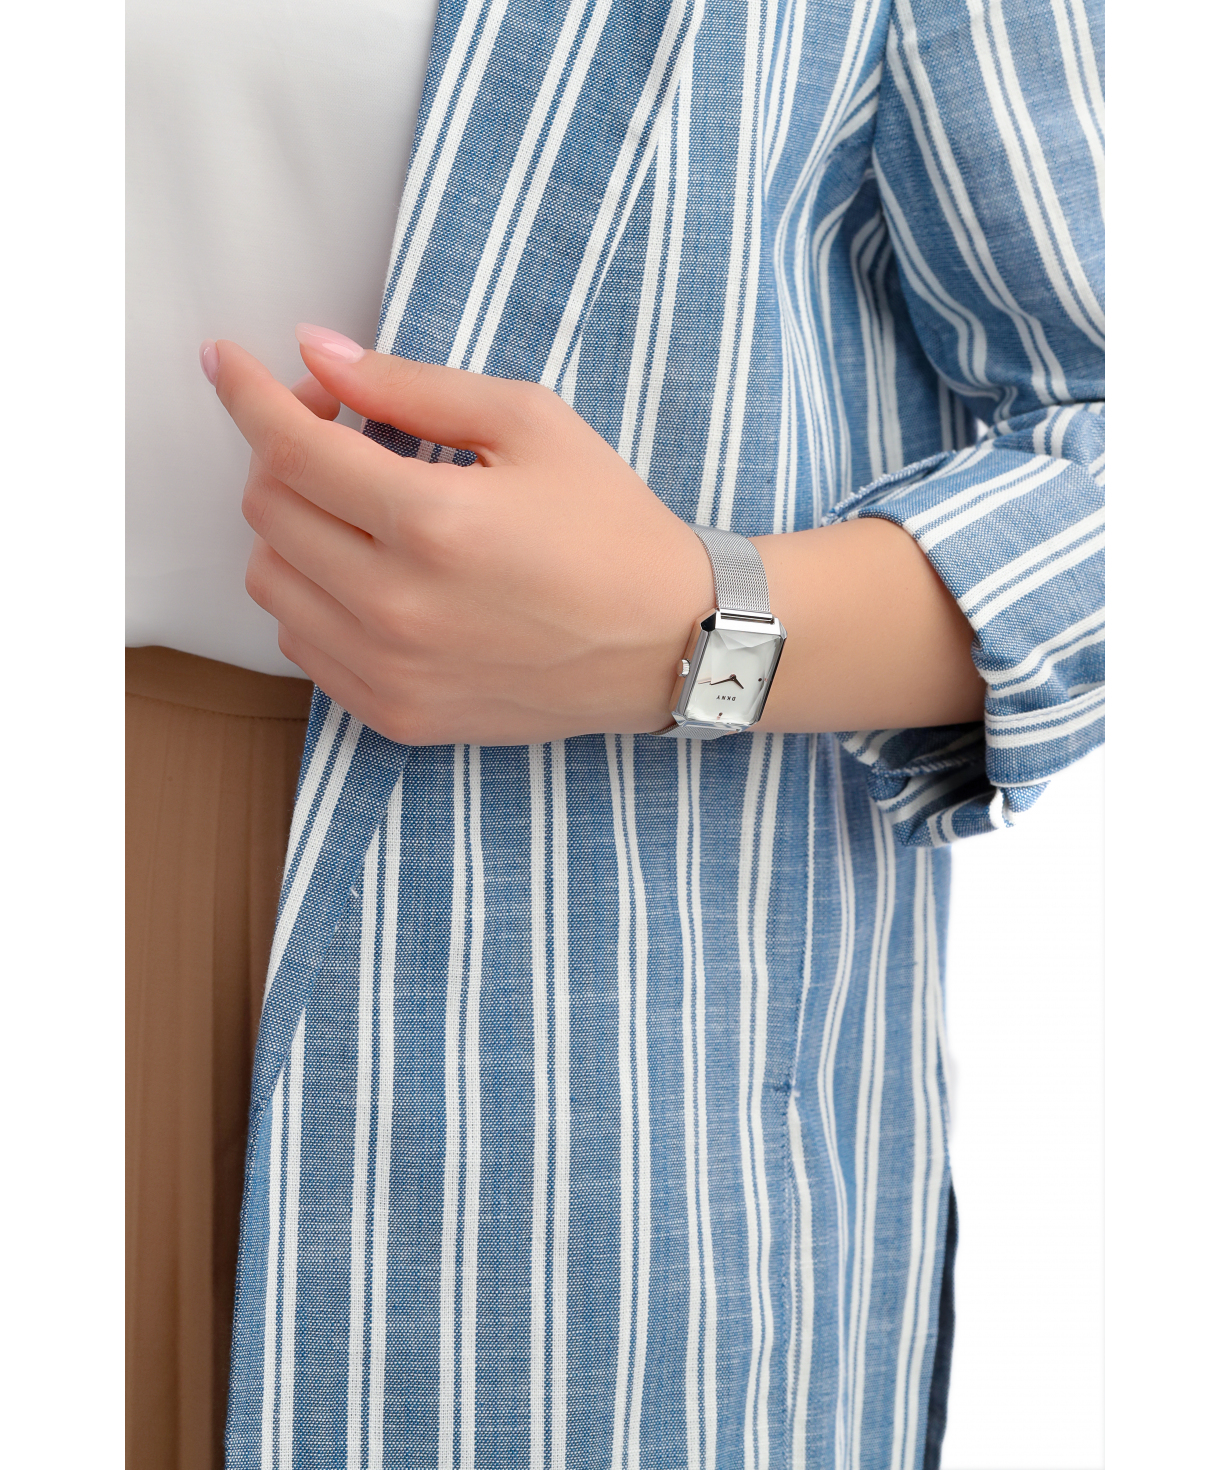 Wrist watch `DKNY` NY2708